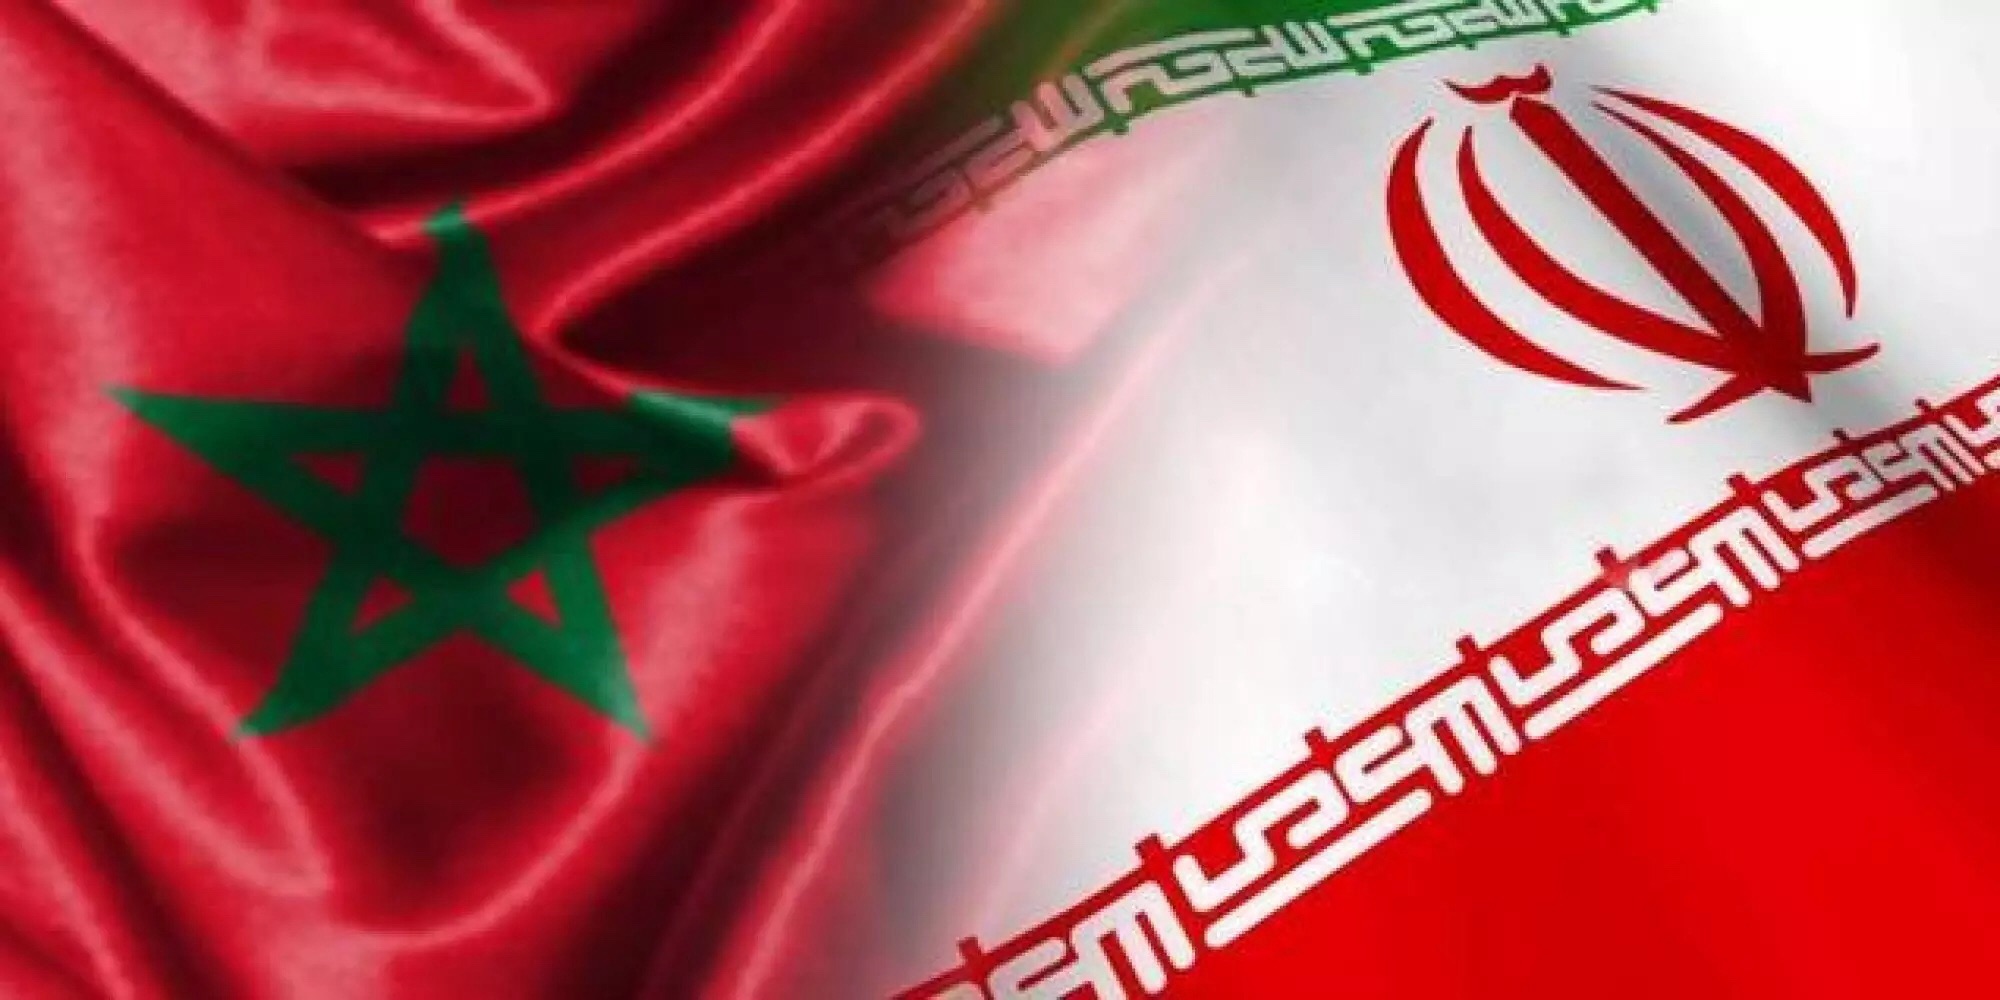 Le Maroc fit bien d’en finir avec l’Iran…